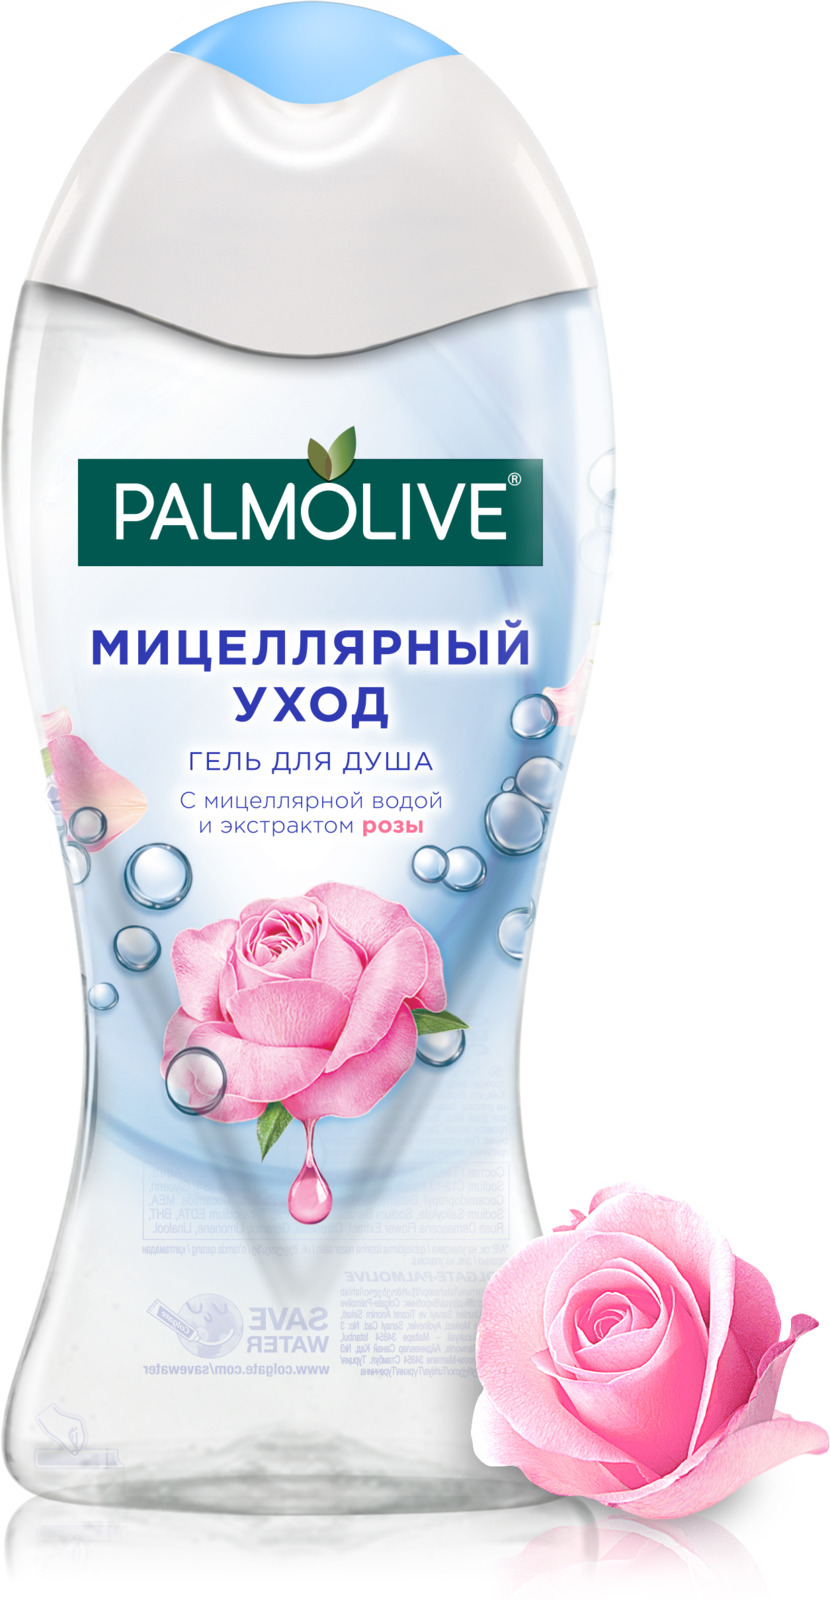 Гель для душа Palmolive Мицеллярный уход, с мицеллярной водой и экстрактом розы, 250 мл